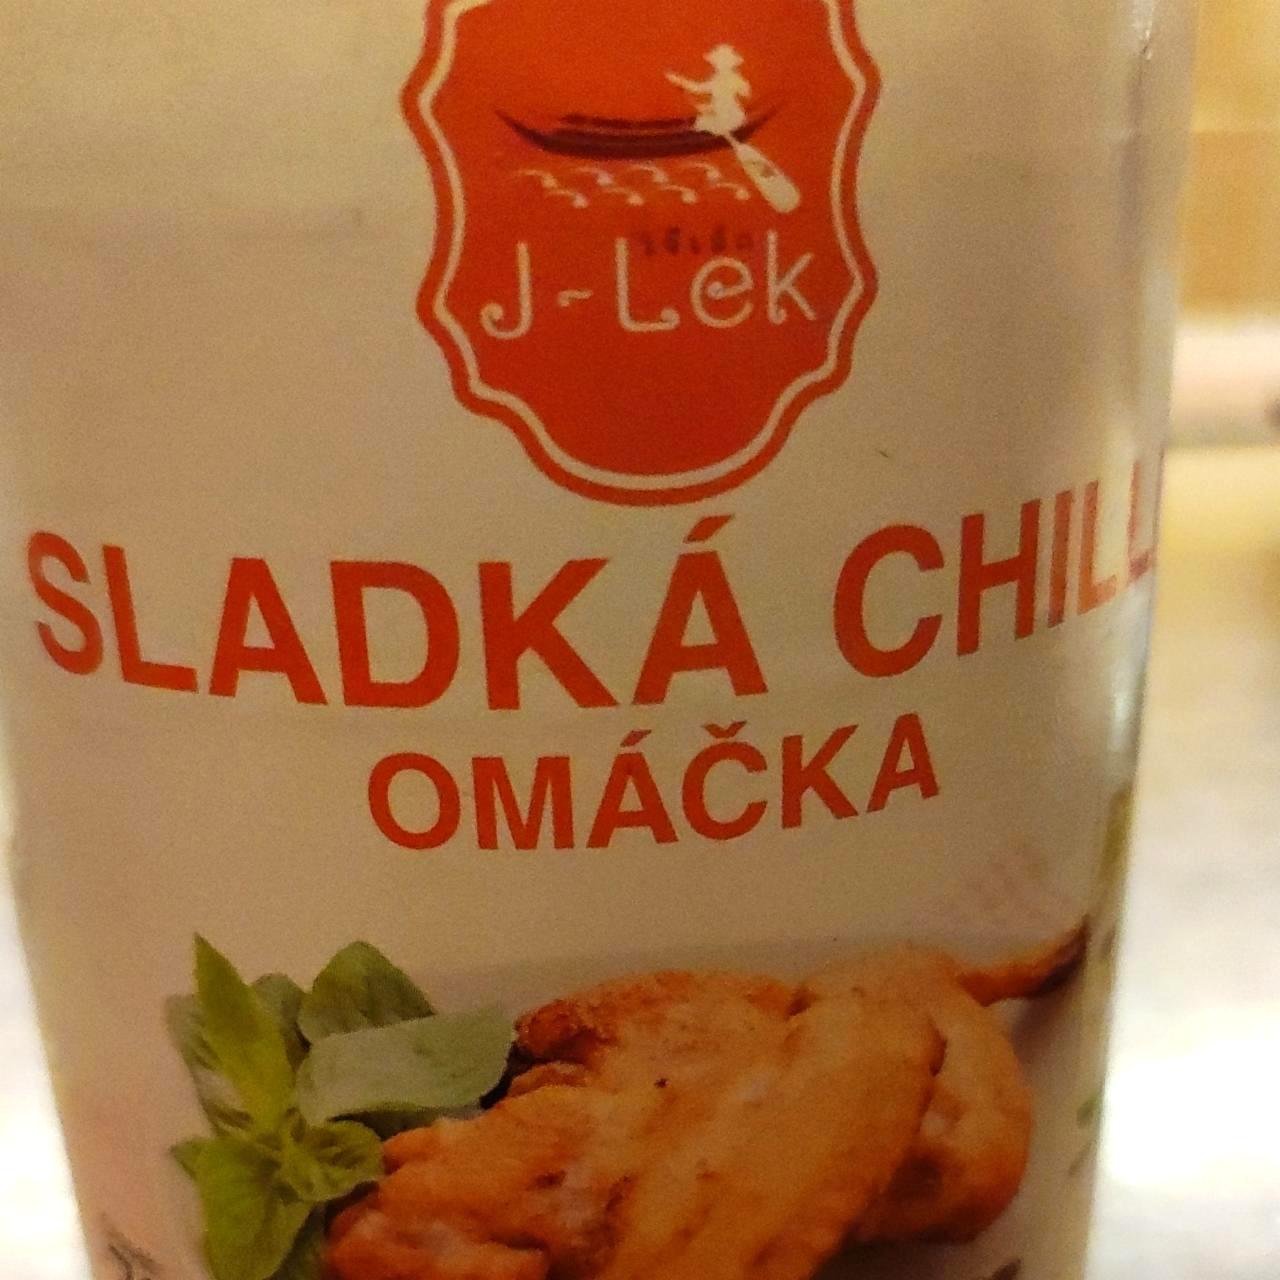 Képek - Sladká chilli omáčka J-Lek